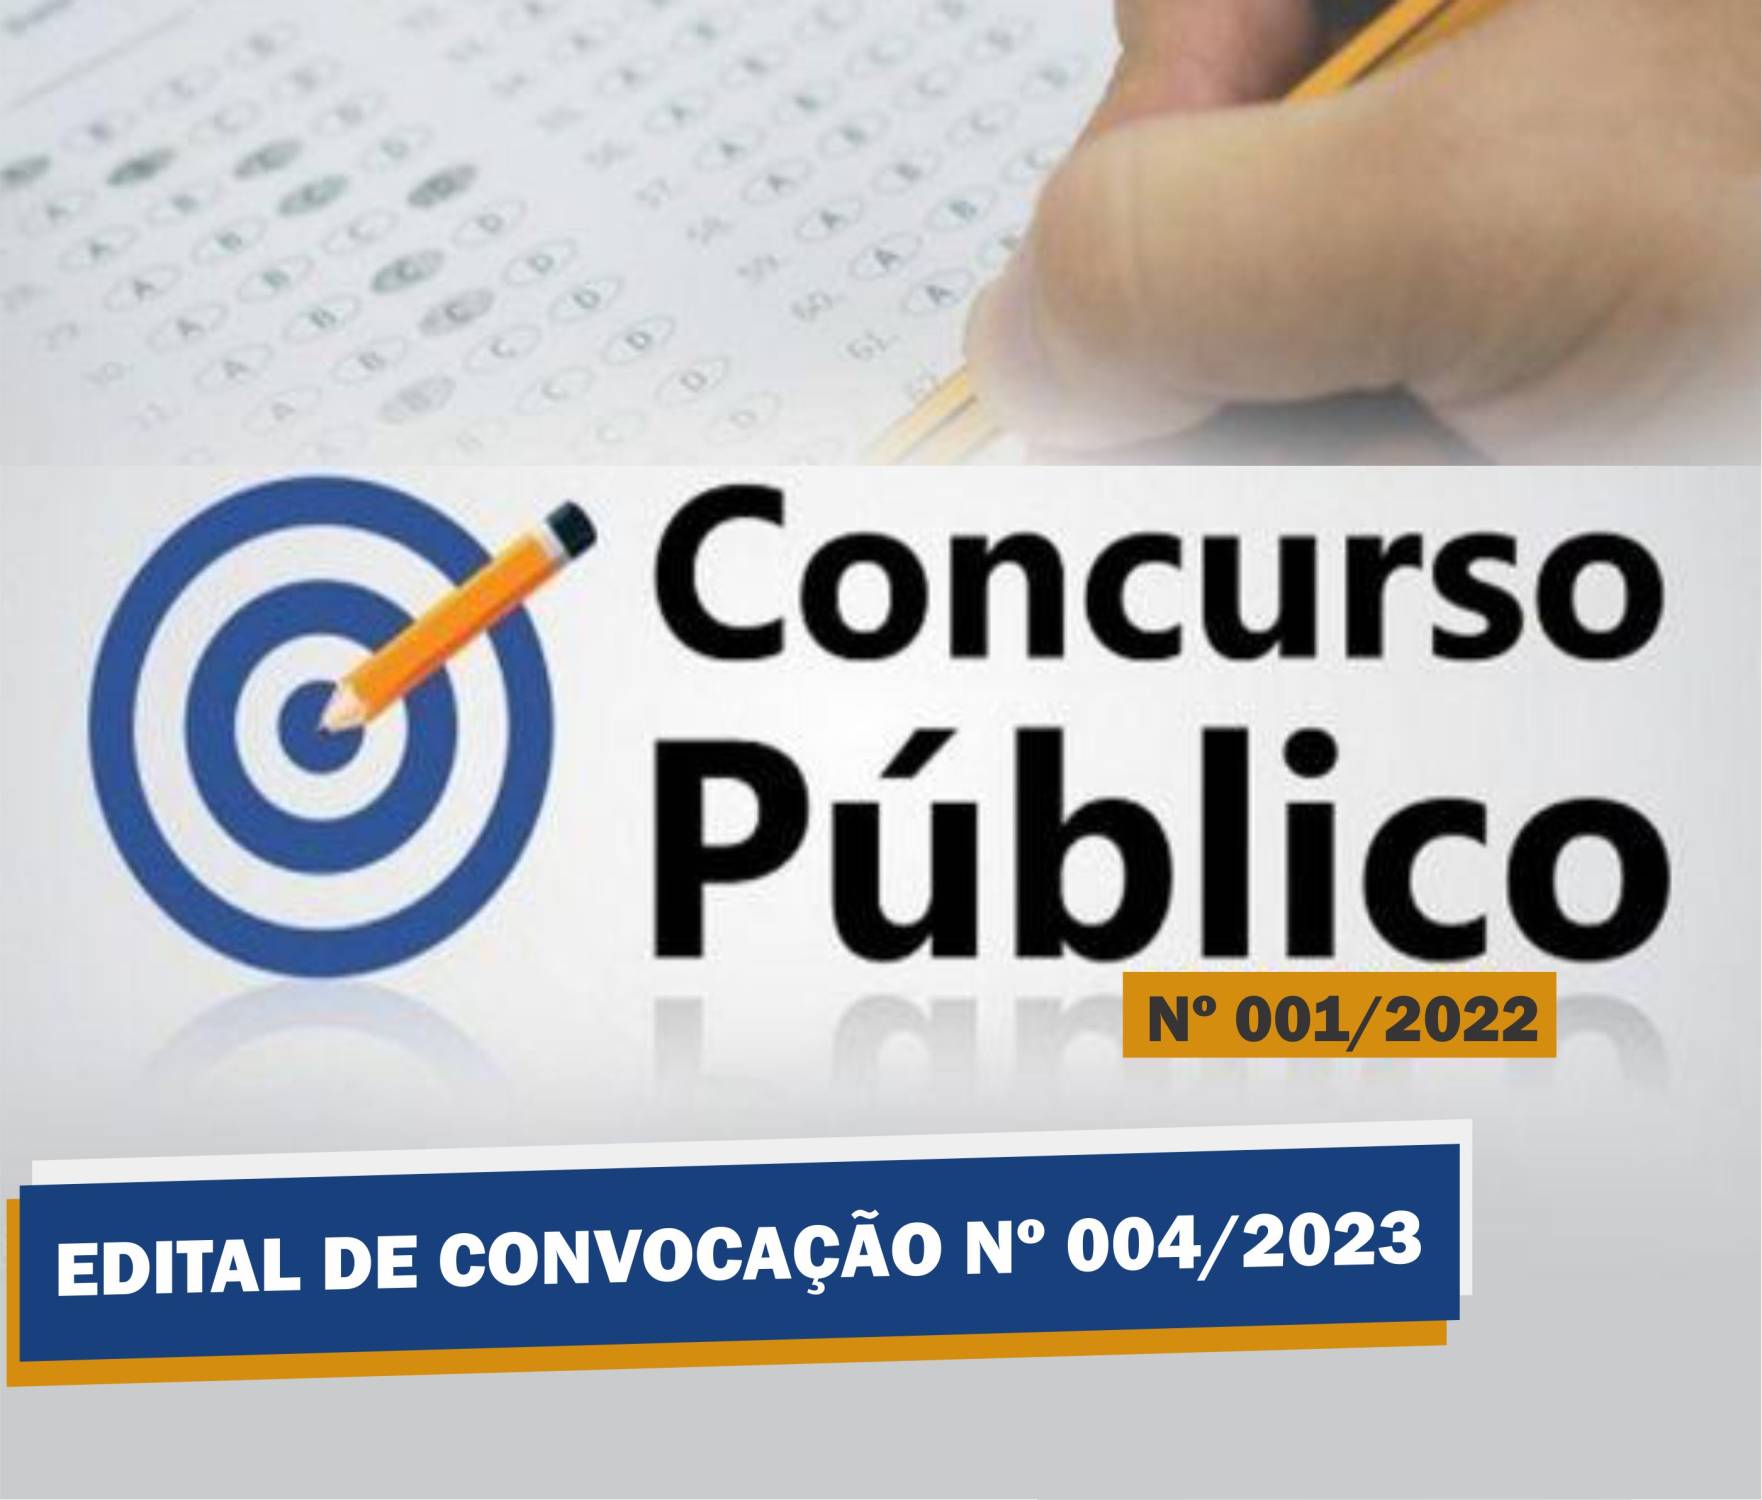 Edital de Convocação Nº 004 - Concurso Público Nº 001/2022